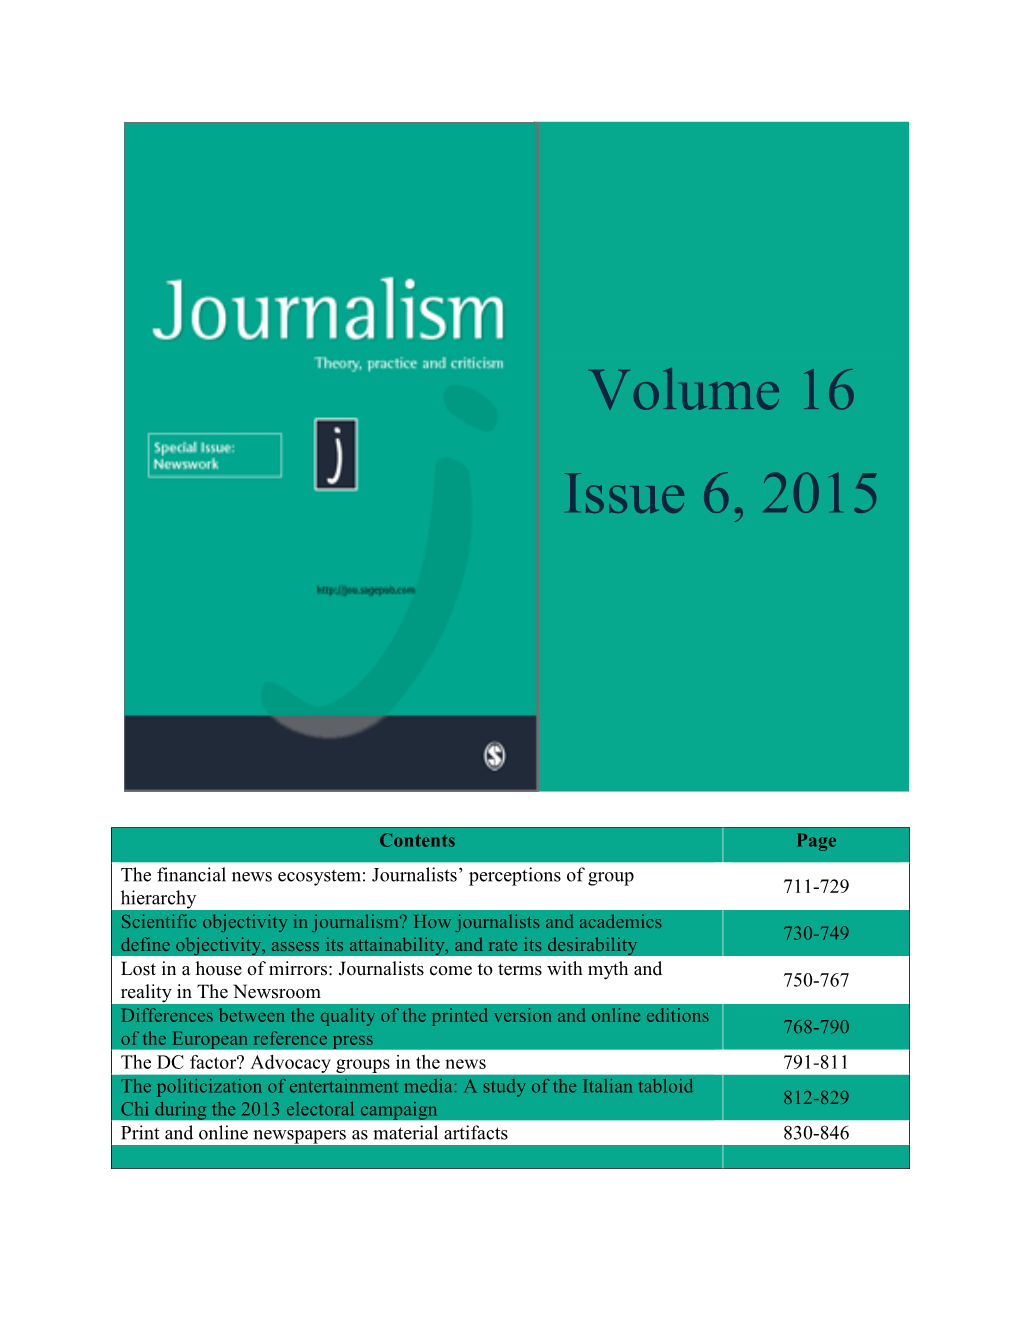 Volume 16 Issue 6, 2015